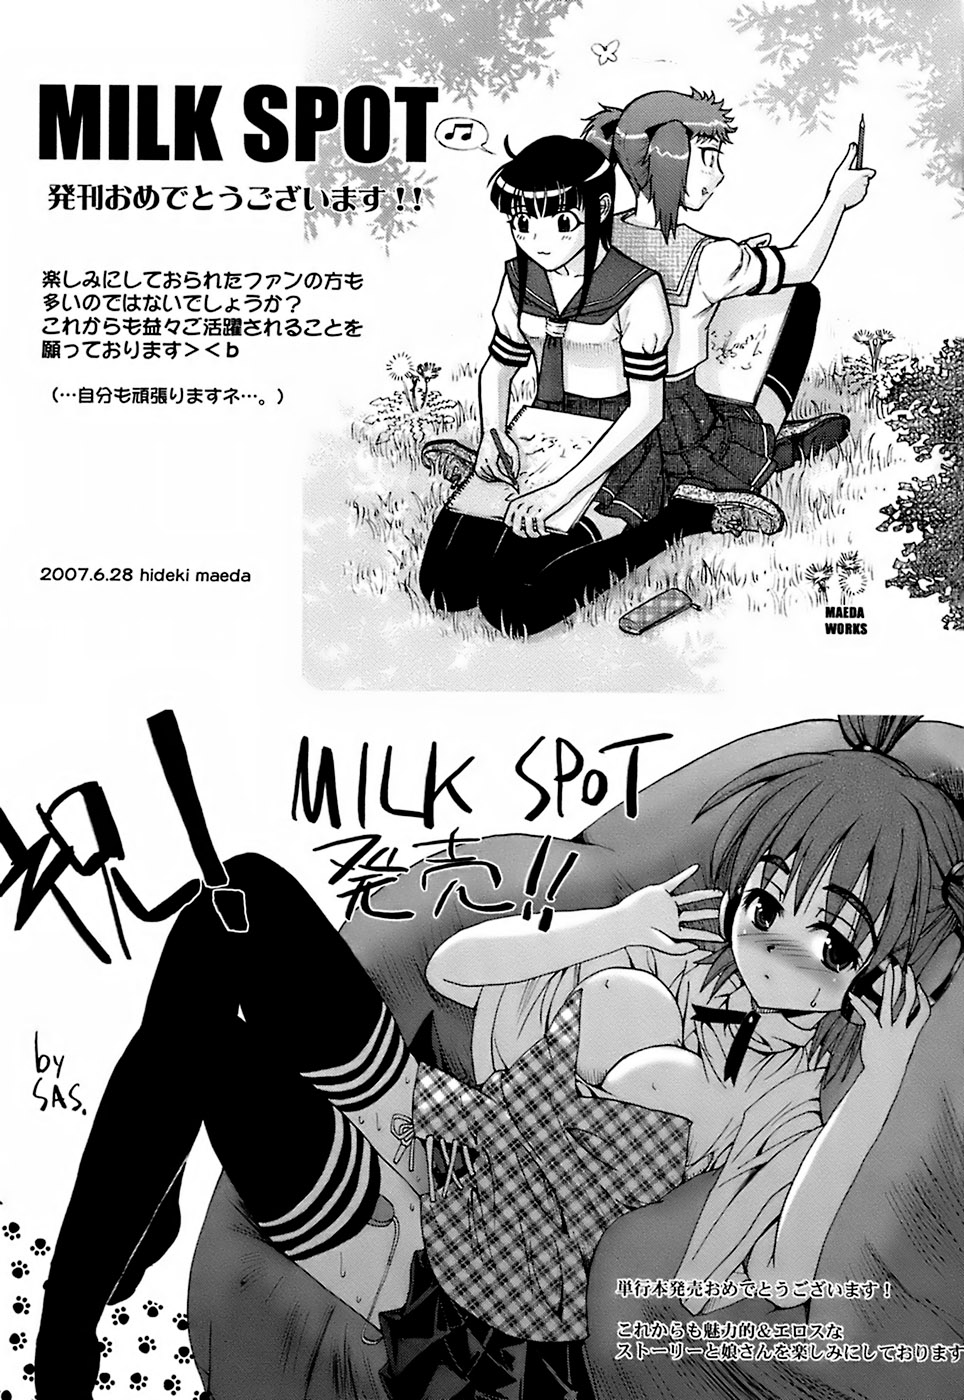 [おかだまつおか] Milk Spot